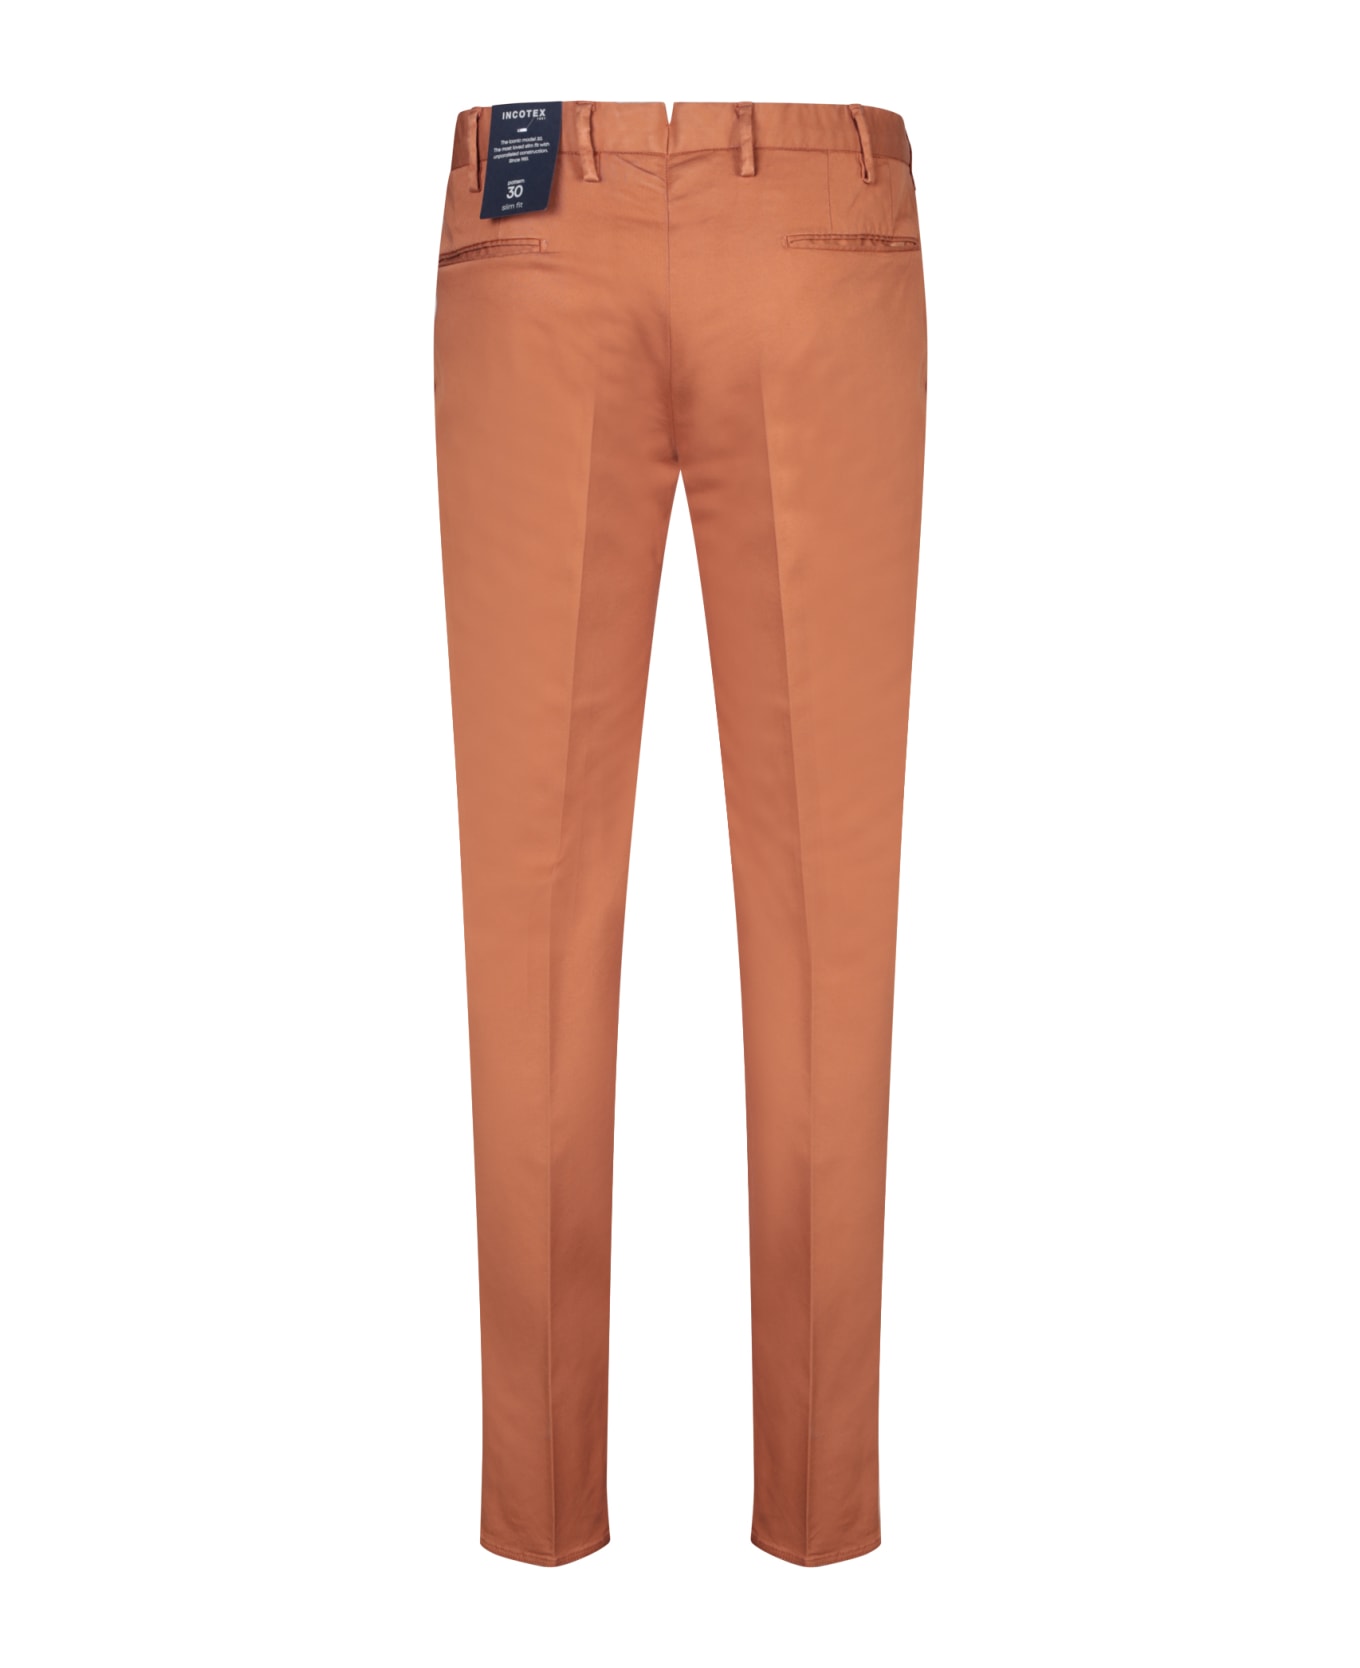 Incotex Brown Slim Fit Trousers - Brown ボトムス